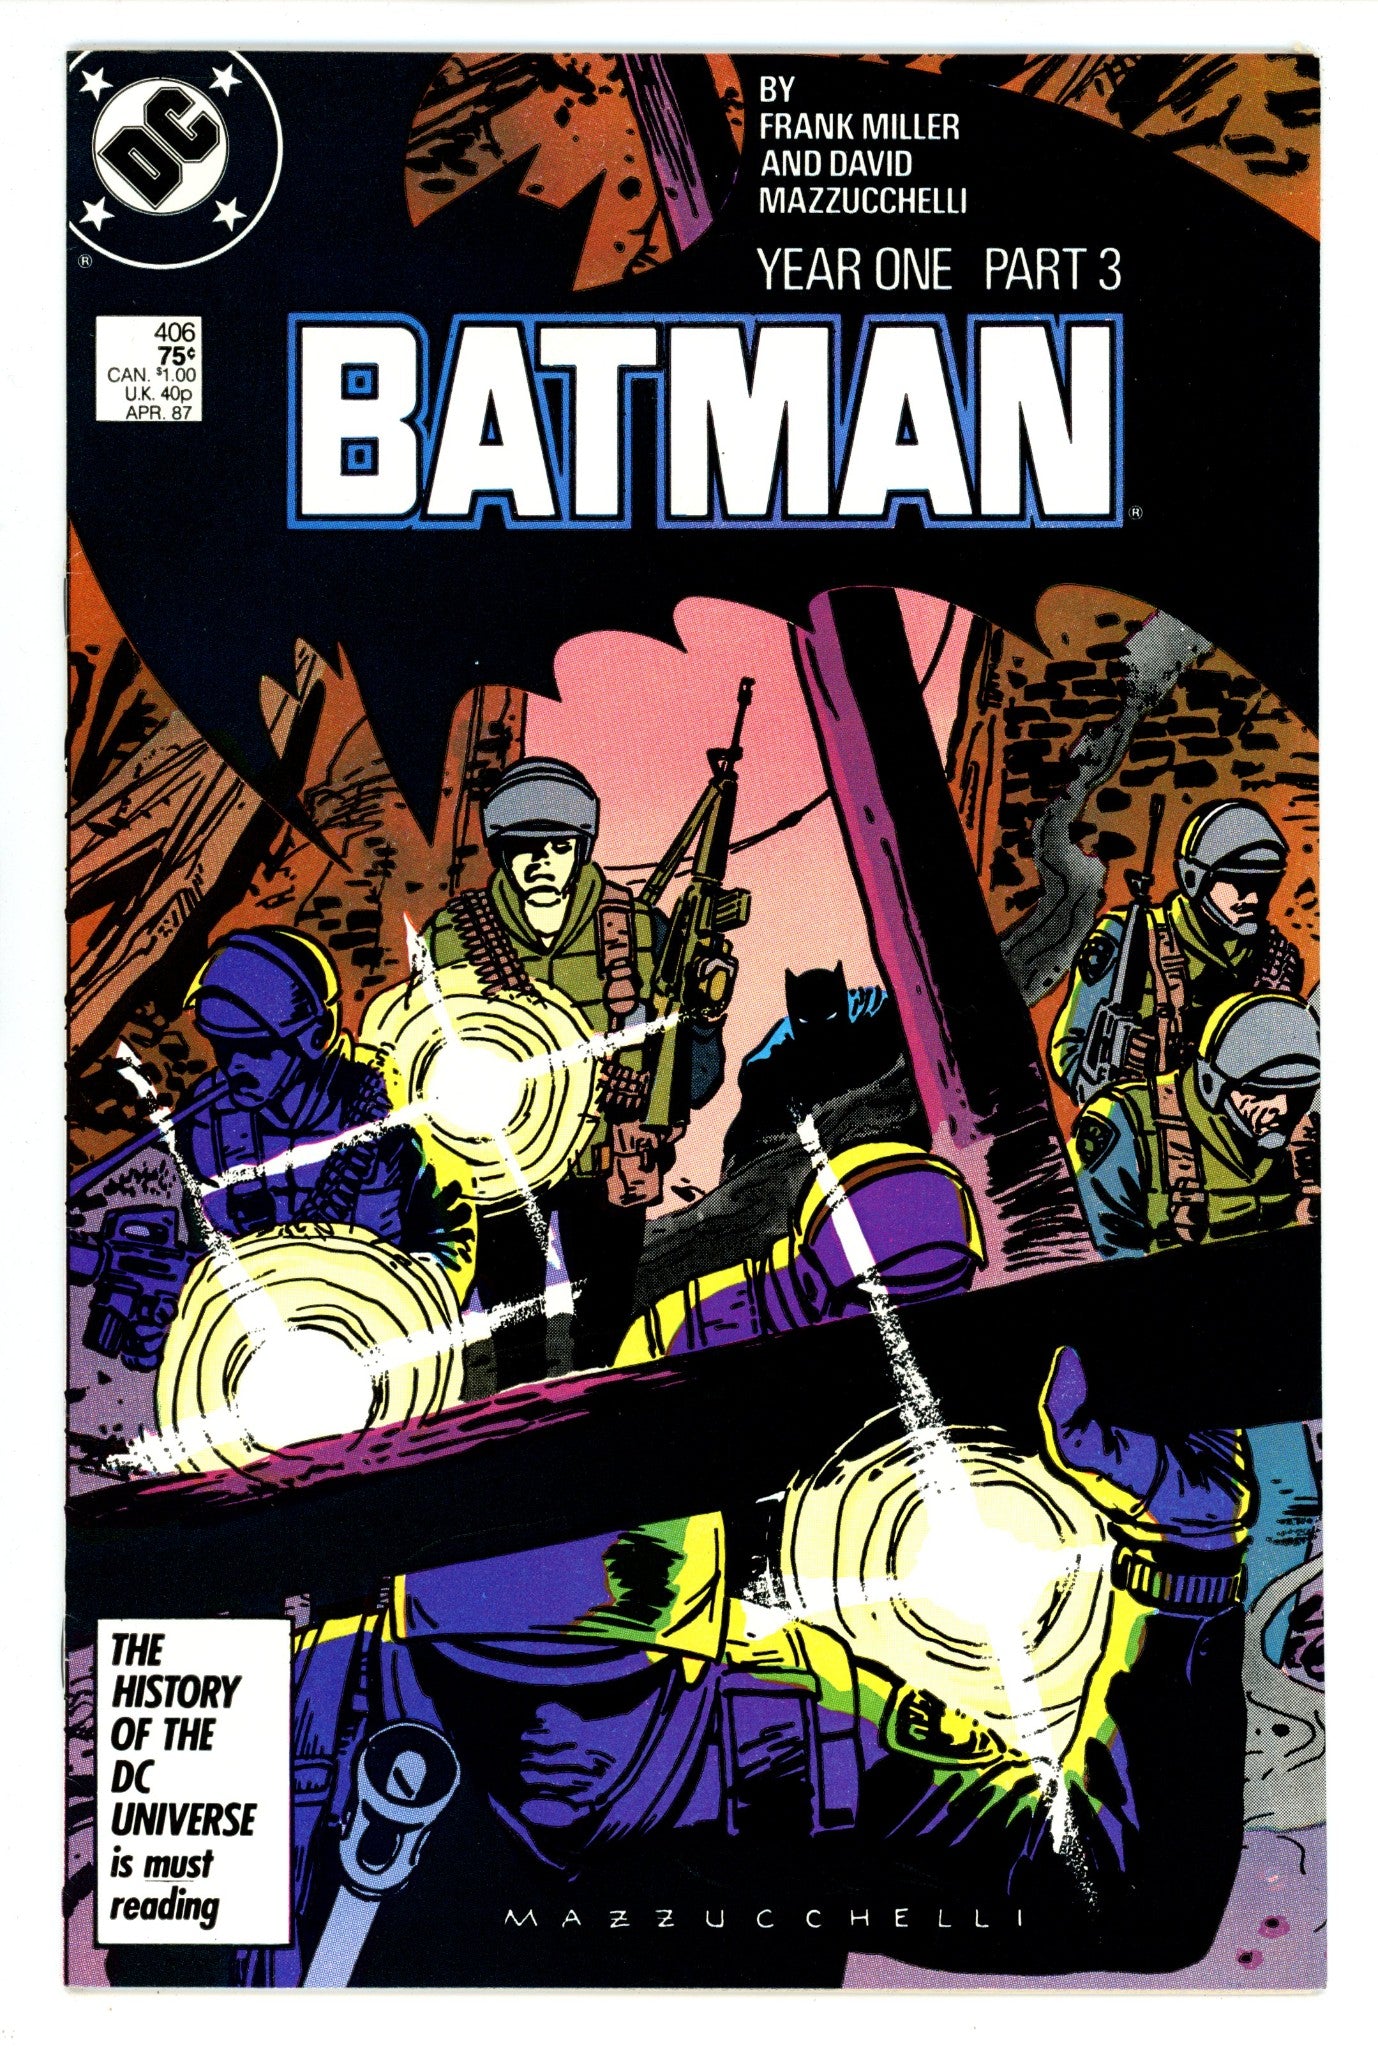 Batman Vol 1 406 VF (8.0) (1987) 